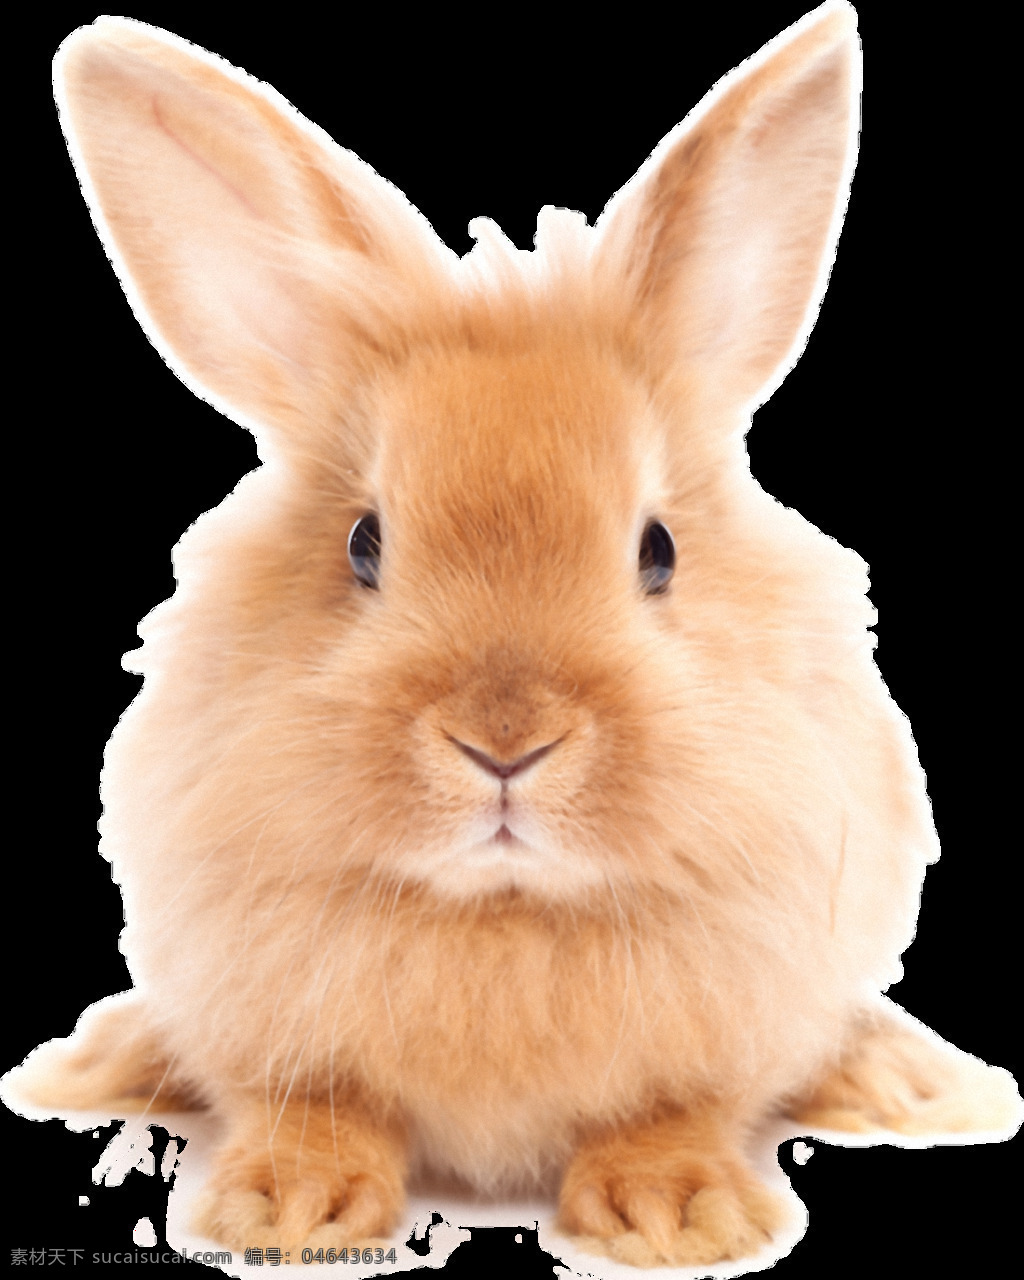 可爱 棕色 毛发 兔子 免 抠 透明 可爱呆萌兔子 超 萌 小 可爱小兔子 大兔子 萌兔子 可爱兔子